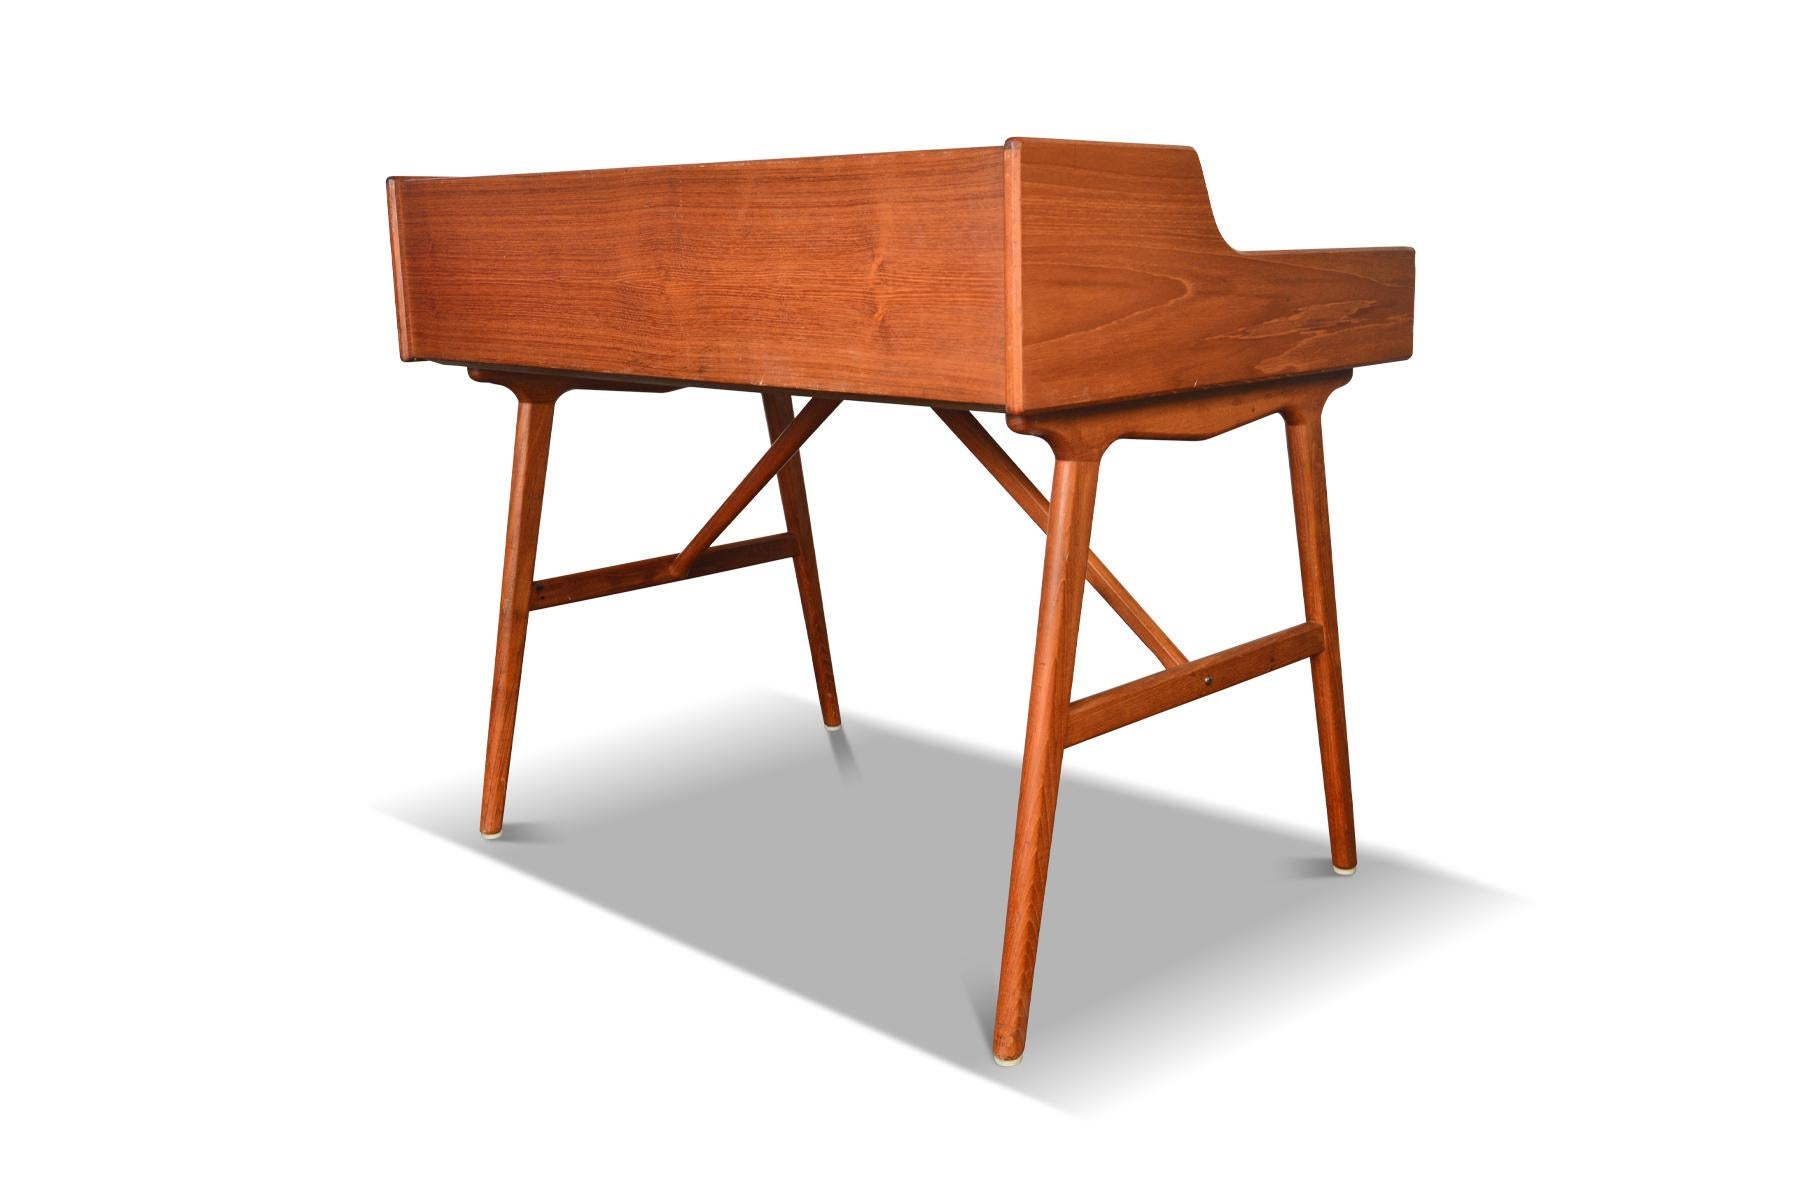 20th Century Model 64 Writing Desk in Teak by Arne Wahl Iversen For Sale